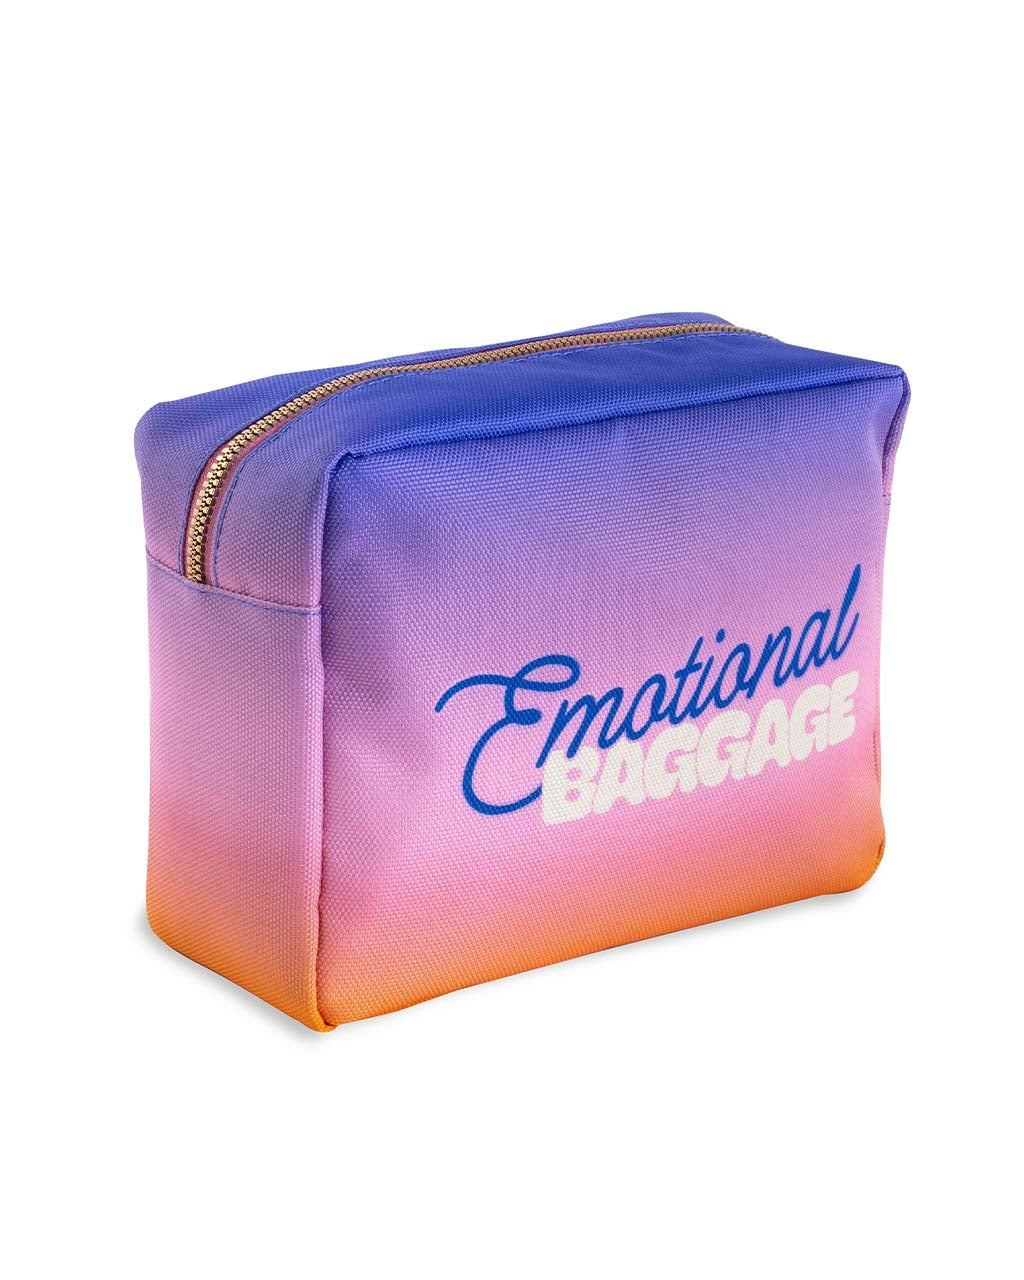 The Getaway Cosmetic Bag - Emotional Baggage [PRE ORDER]